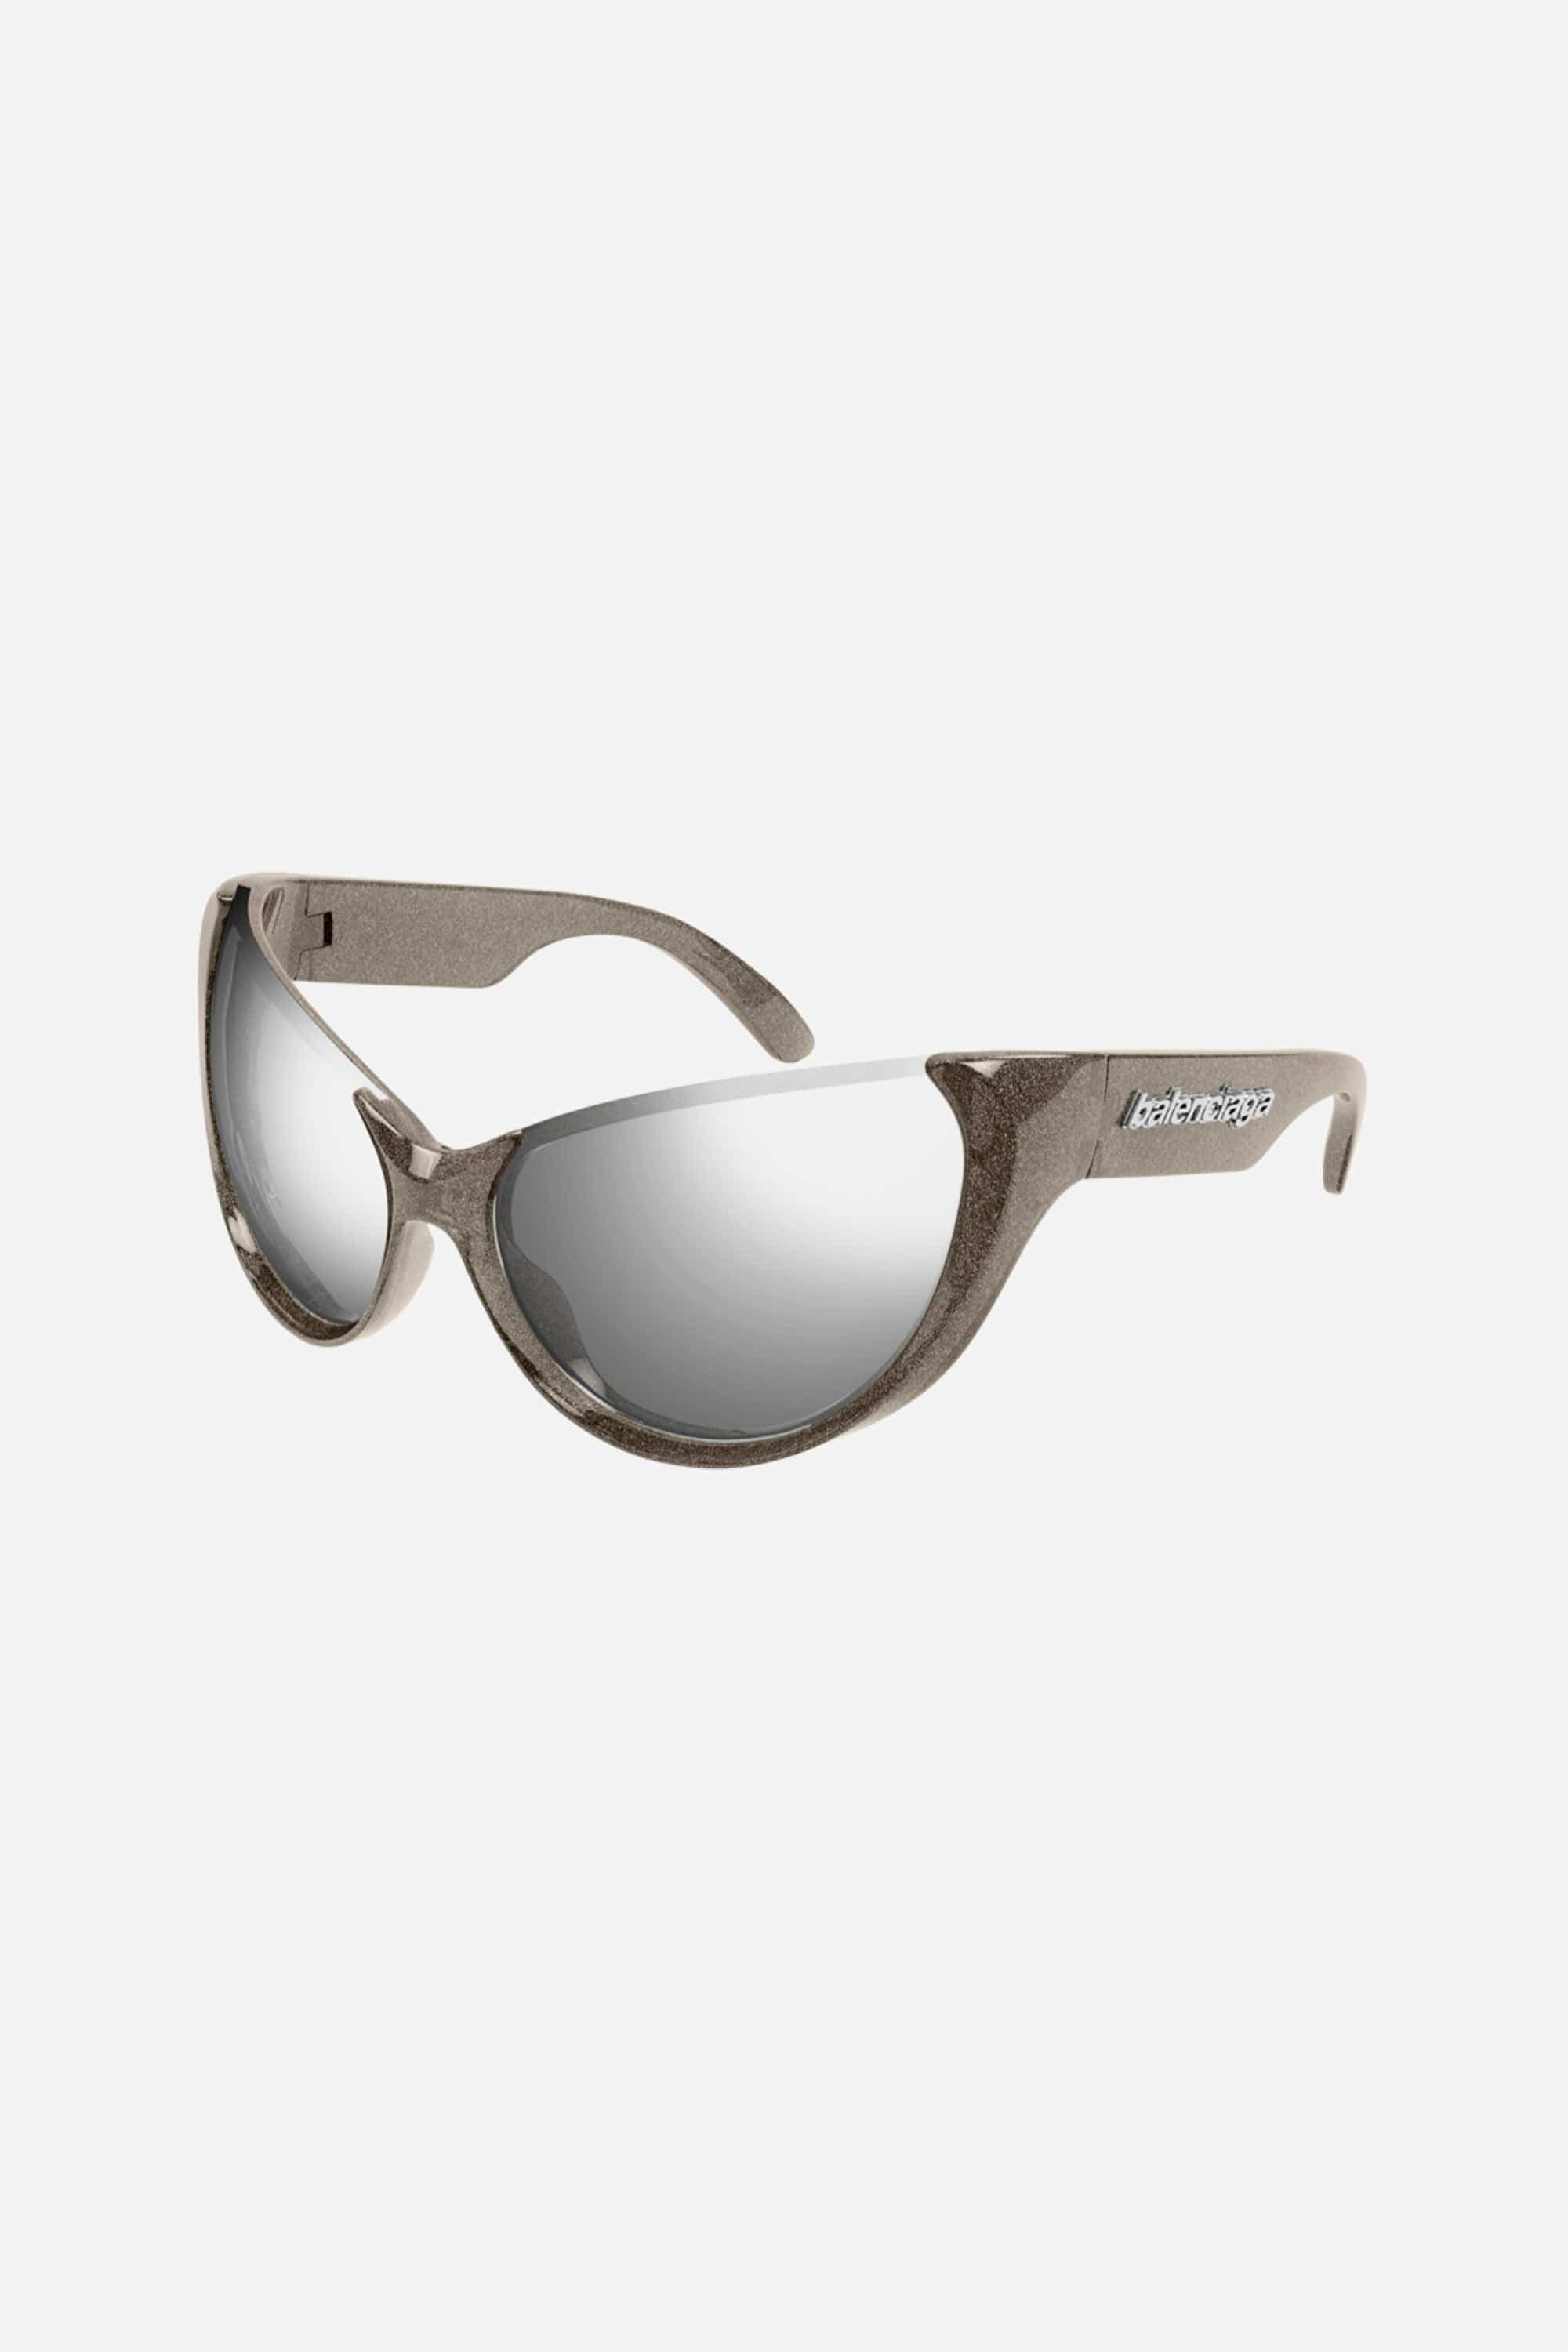 Balenciaga silver wrap around sunglasses - Eyewear Club